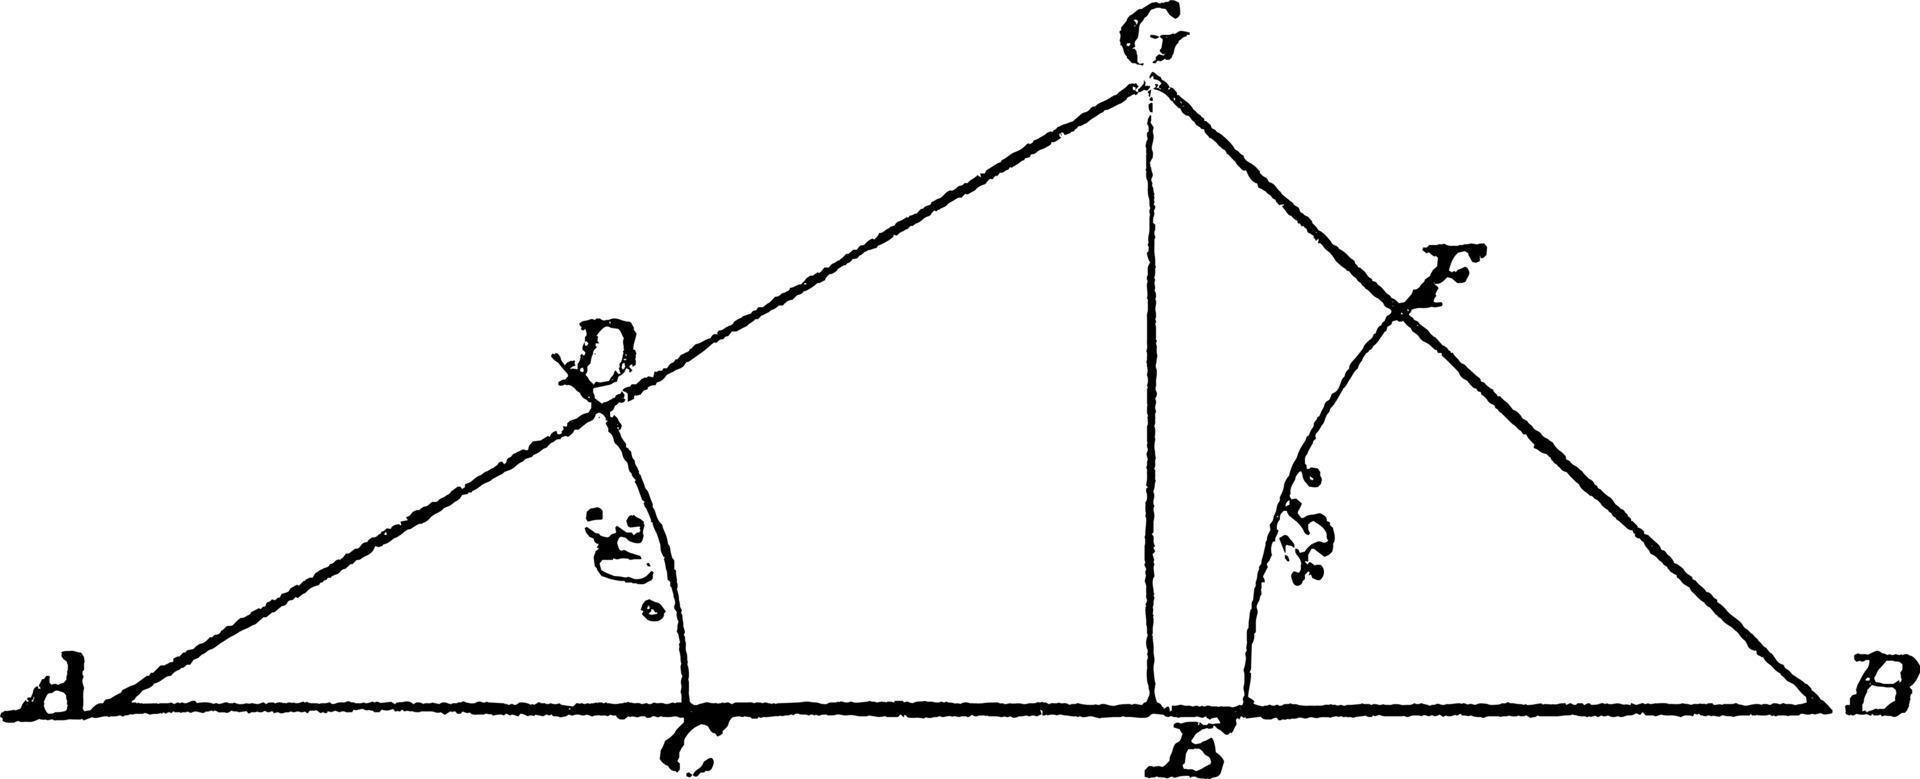 construcción de triángulo dado ángulos y base, ilustración vintage. vector